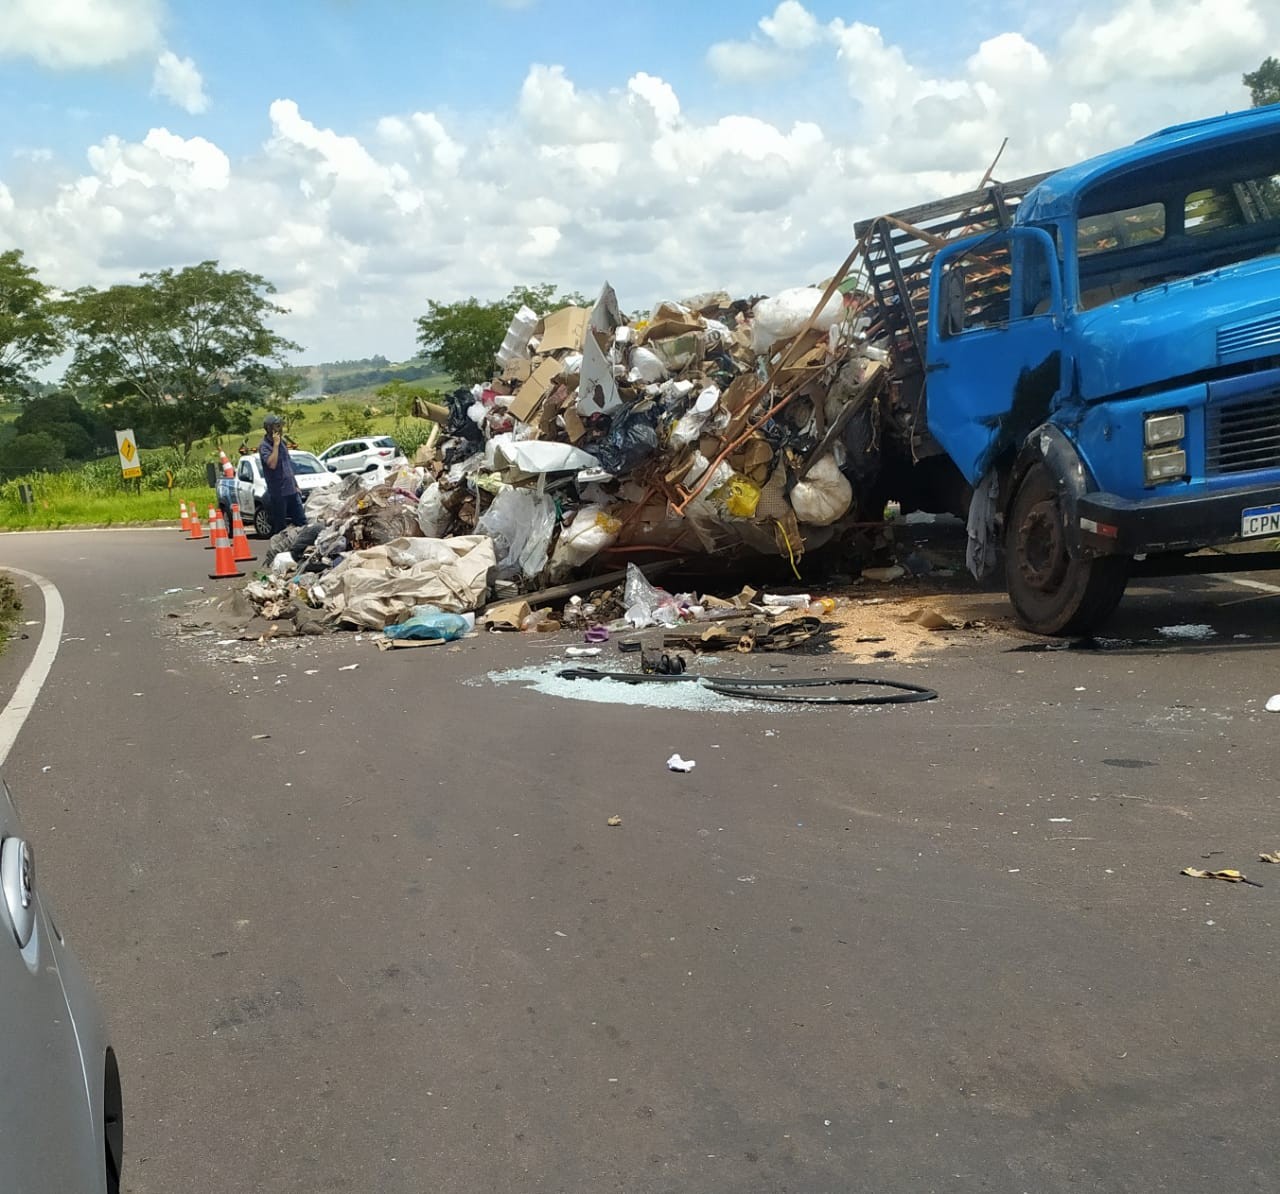 Carga de materiais recicláveis cai de caminhão no trevo que liga as rodovias Júlio Budiski e Raposo Tavares, em Álvares Machado